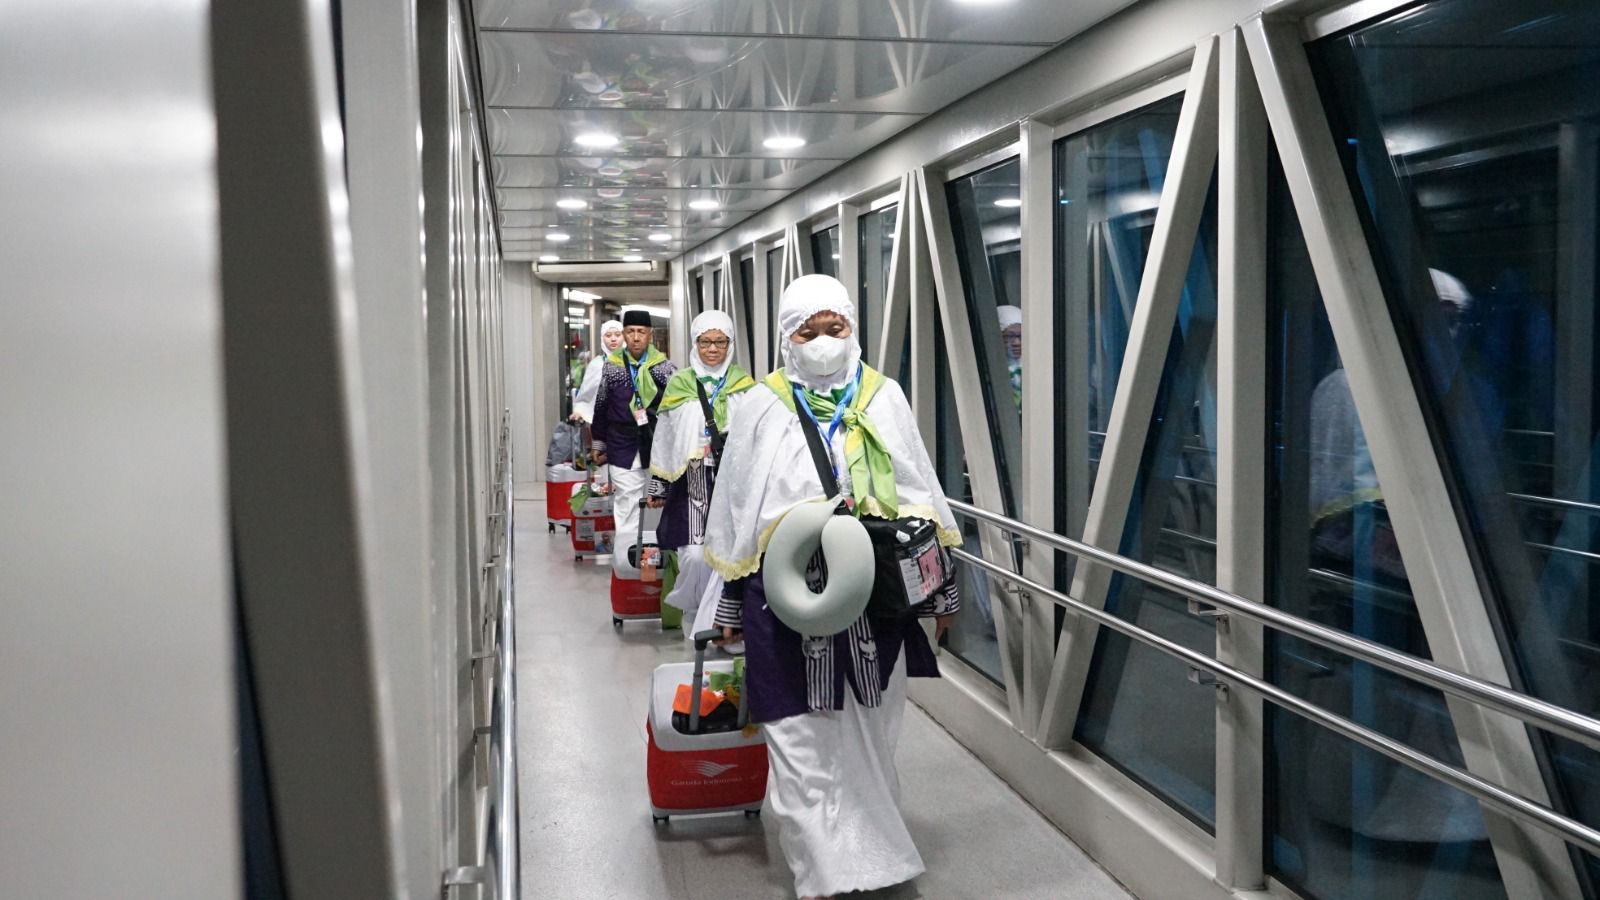 Kemenag Kecewa 47,5 Persen Penerbangan Haji yang Gunakan Garuda Indonesia Alami Keterlambatan